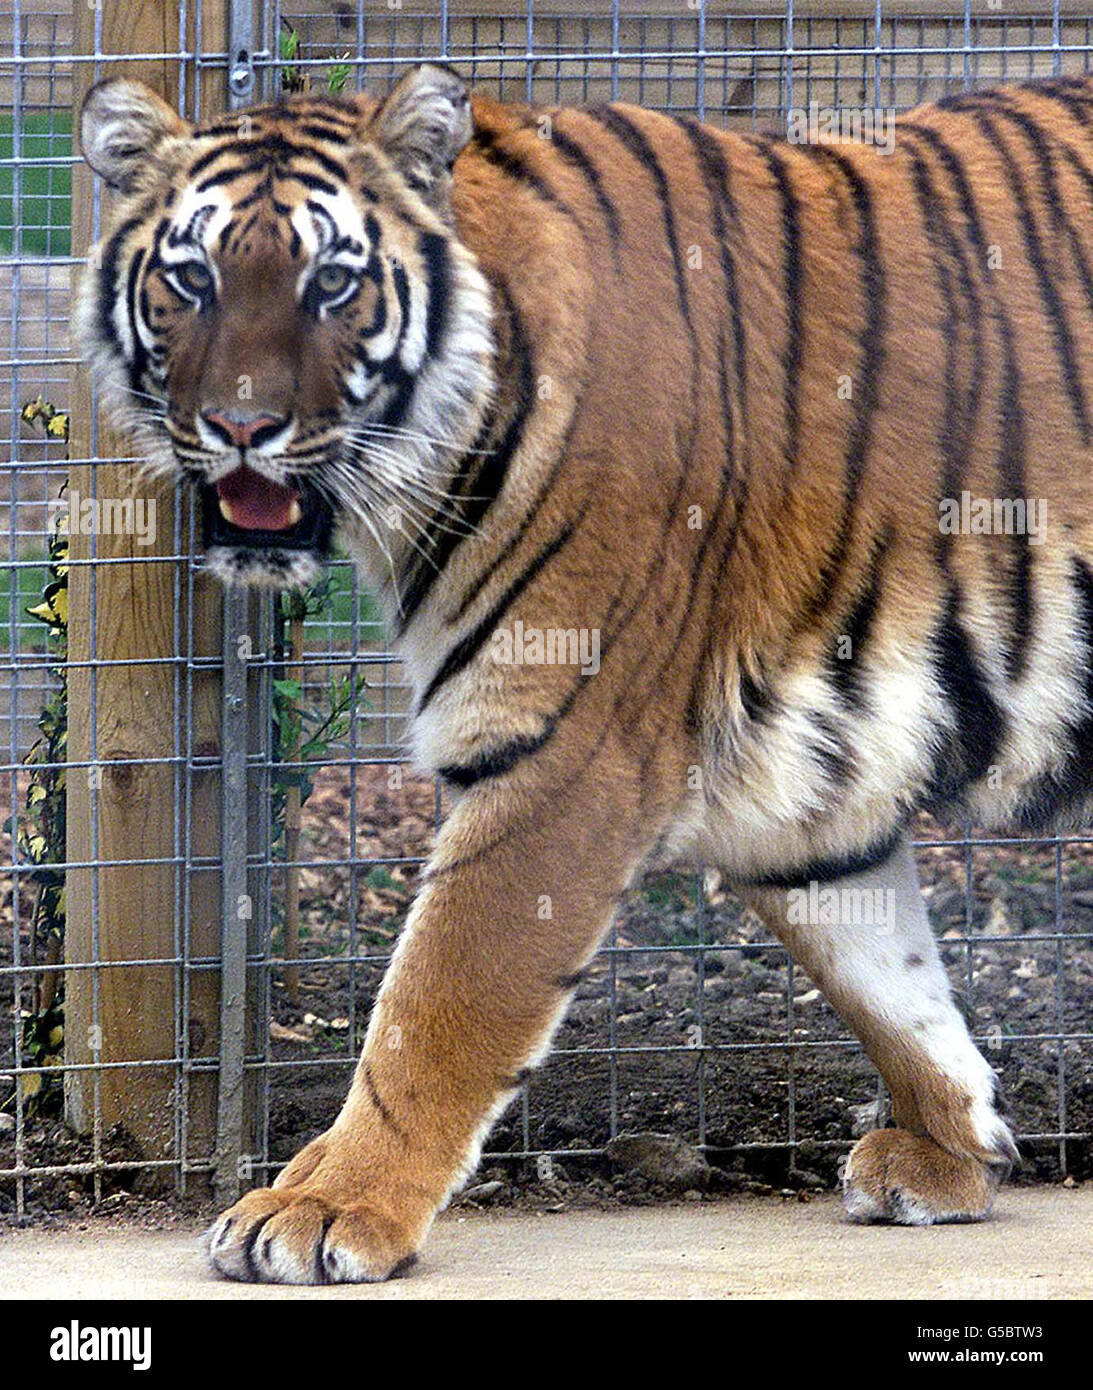 Amba The Bengal Tiger im Willersmill Wildlife Park in Shepreth, Cambridgeshire. Bewohner, die im hinteren Teil des Parks leben, sagen, dass sie besorgt sind, wenn der Tiger, der 1,5m lang und fast 1,5m groß ist, entkommt. * Park-Besitzer Jake Willers sagte, die zweieinhalb Jahre alte weibliche Tiger würde nicht in der Lage sein, die speziell gebauten Gehäuse zu entkommen. Stockfoto